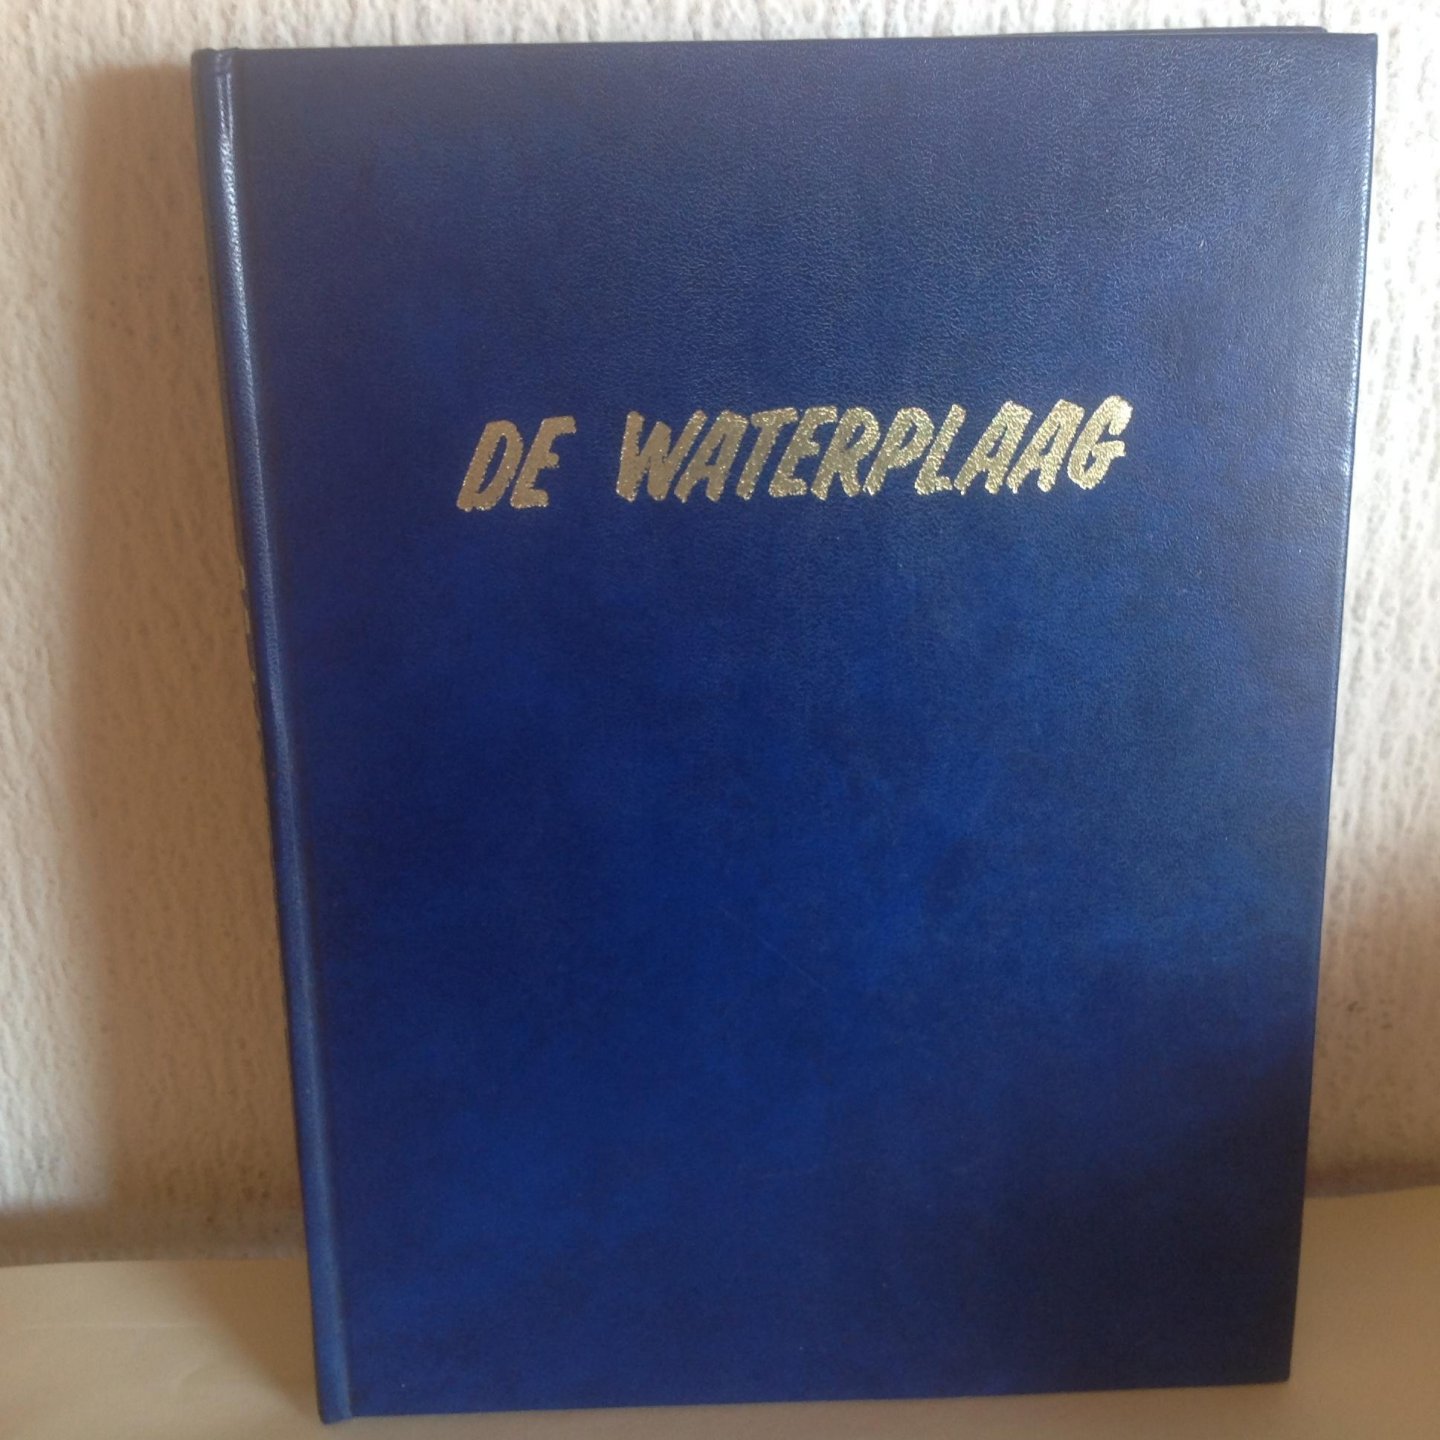 Petersen - Waterplaag / druk 1